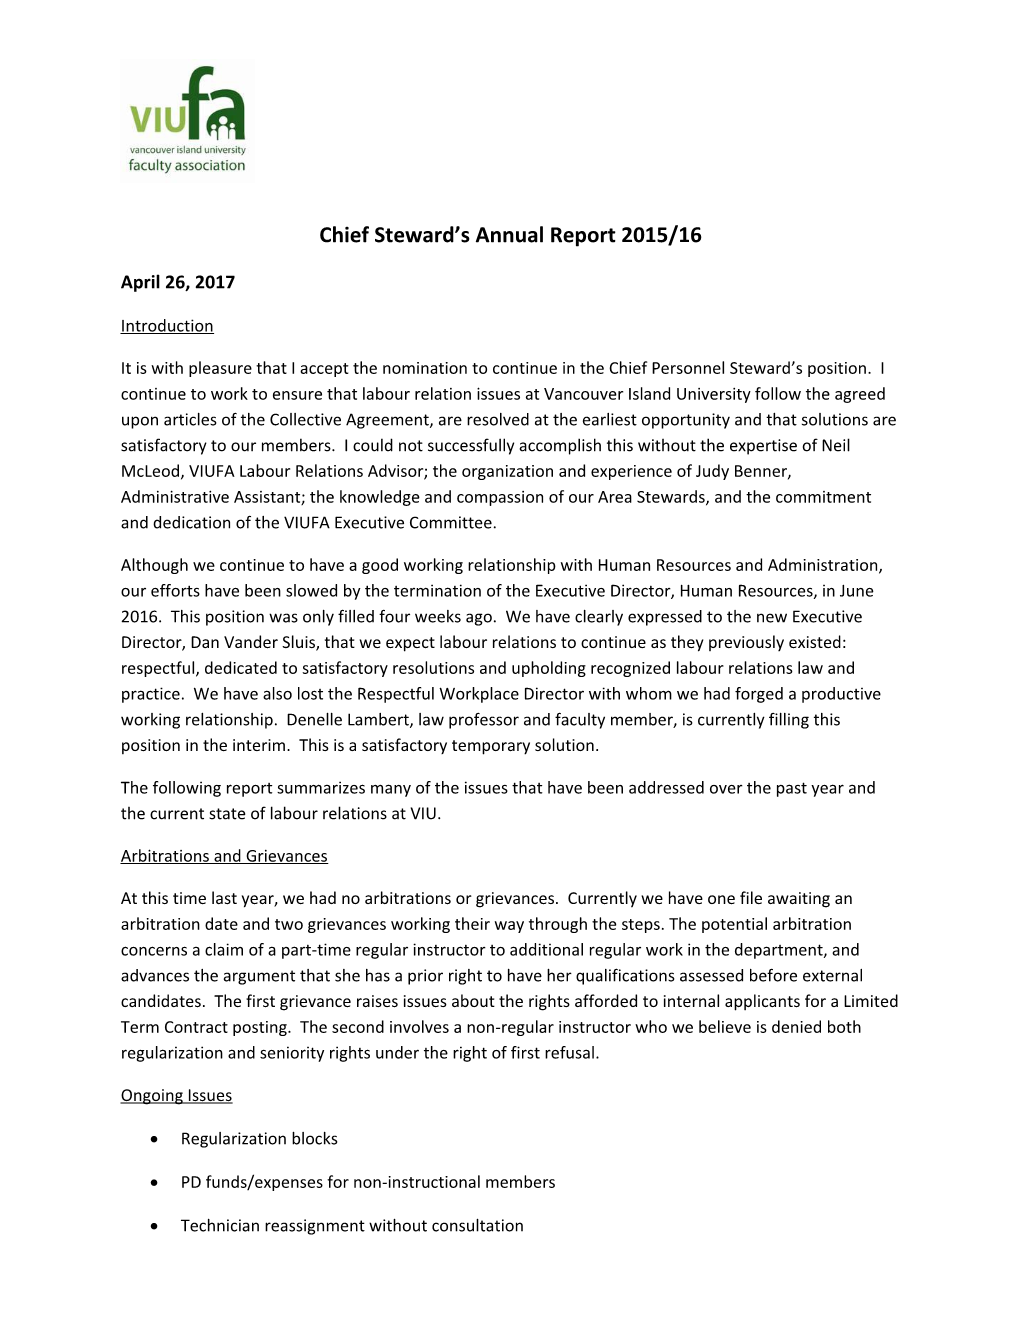 Chief Steward S Annual Report 2015/16